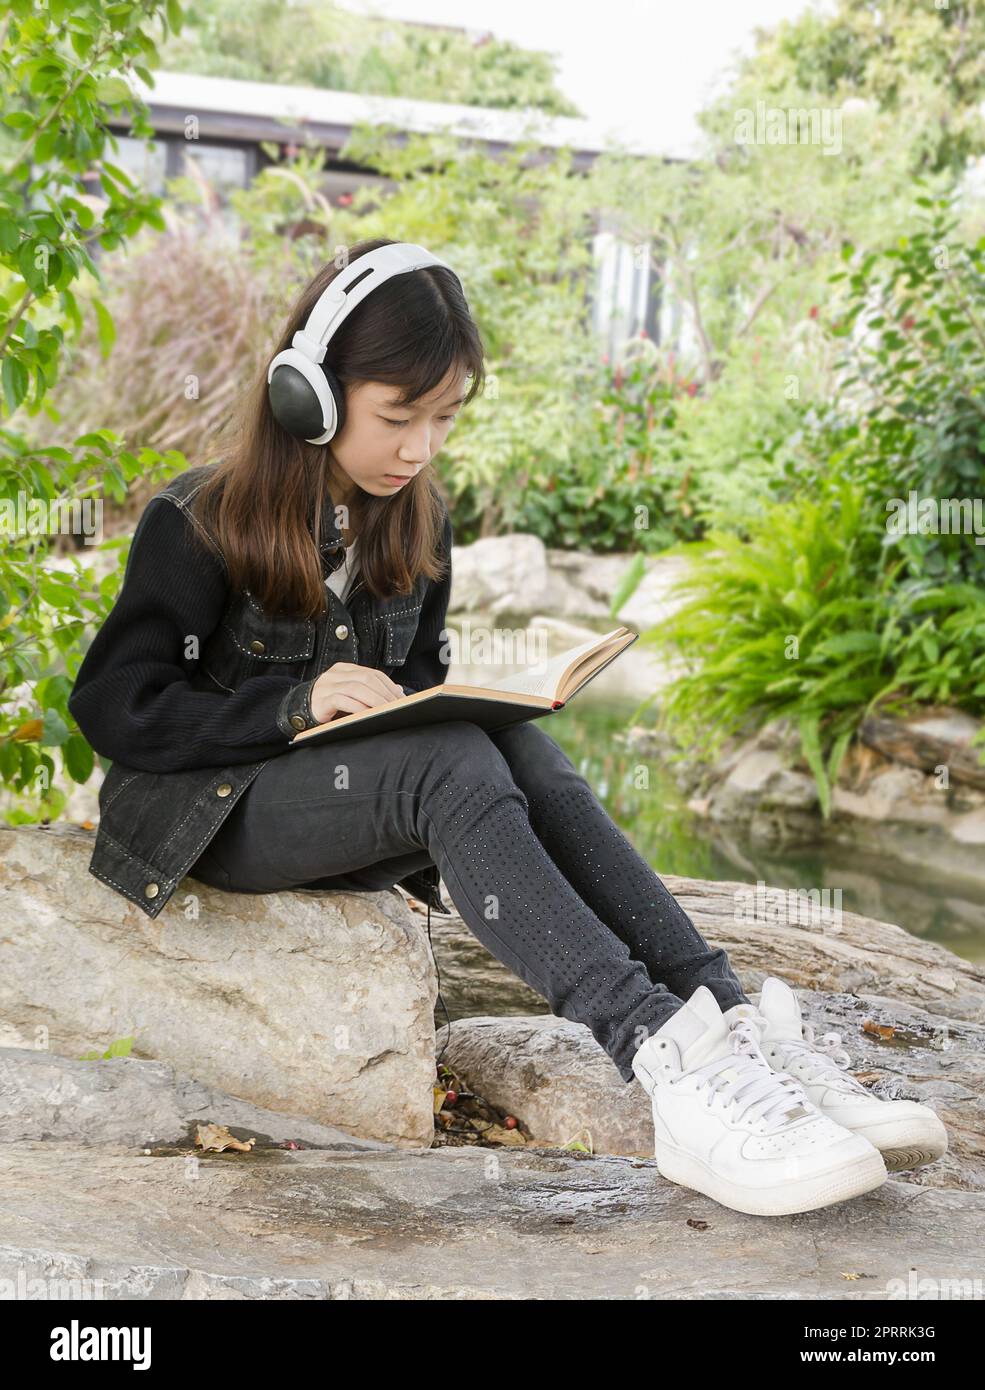 Young Girl reading book et écouter de la musique in park Banque D'Images